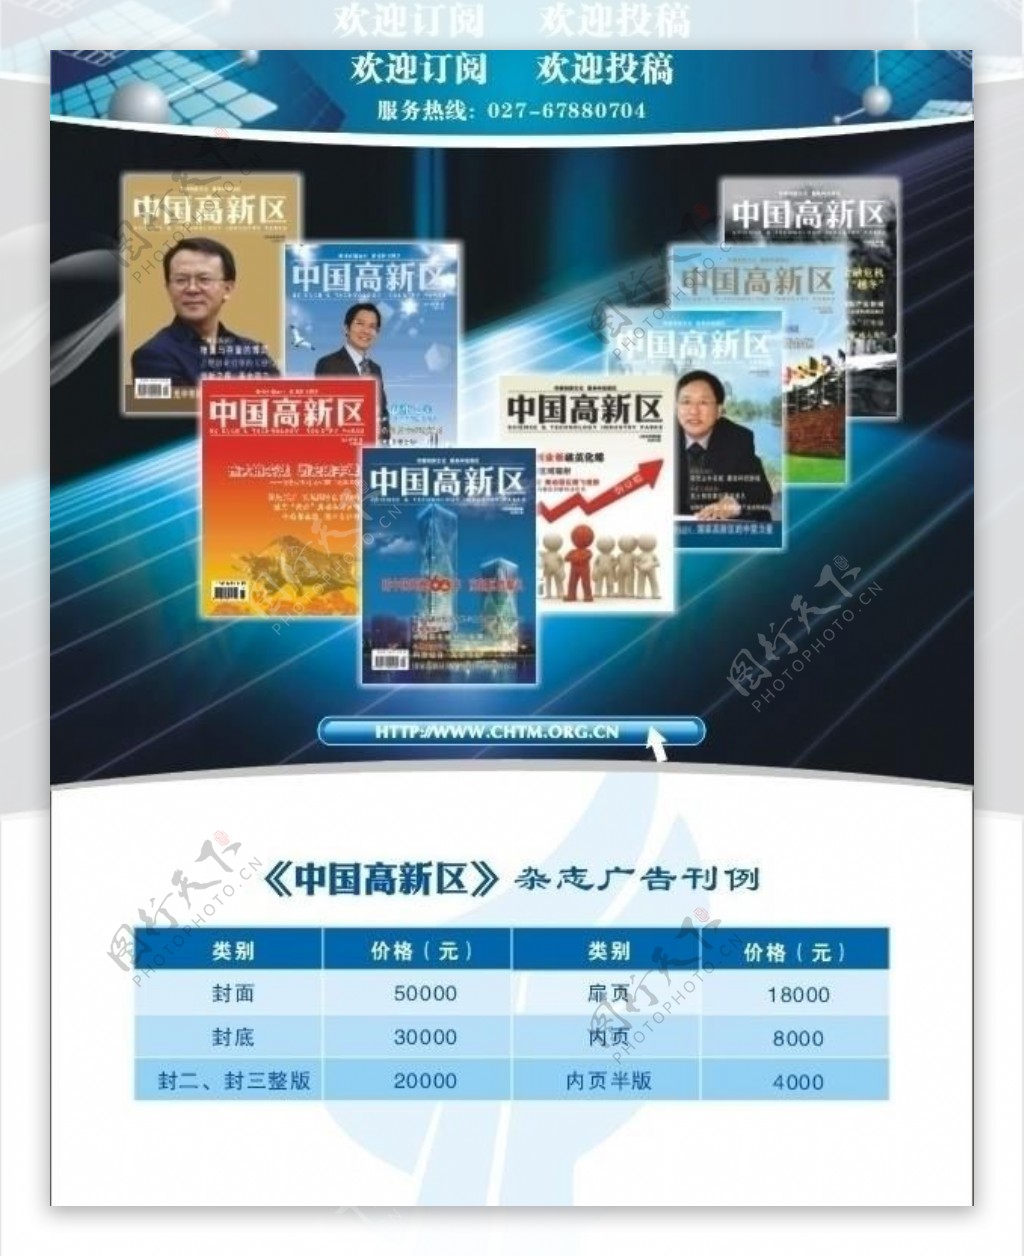 2010年中国高新区杂志征订广告图片